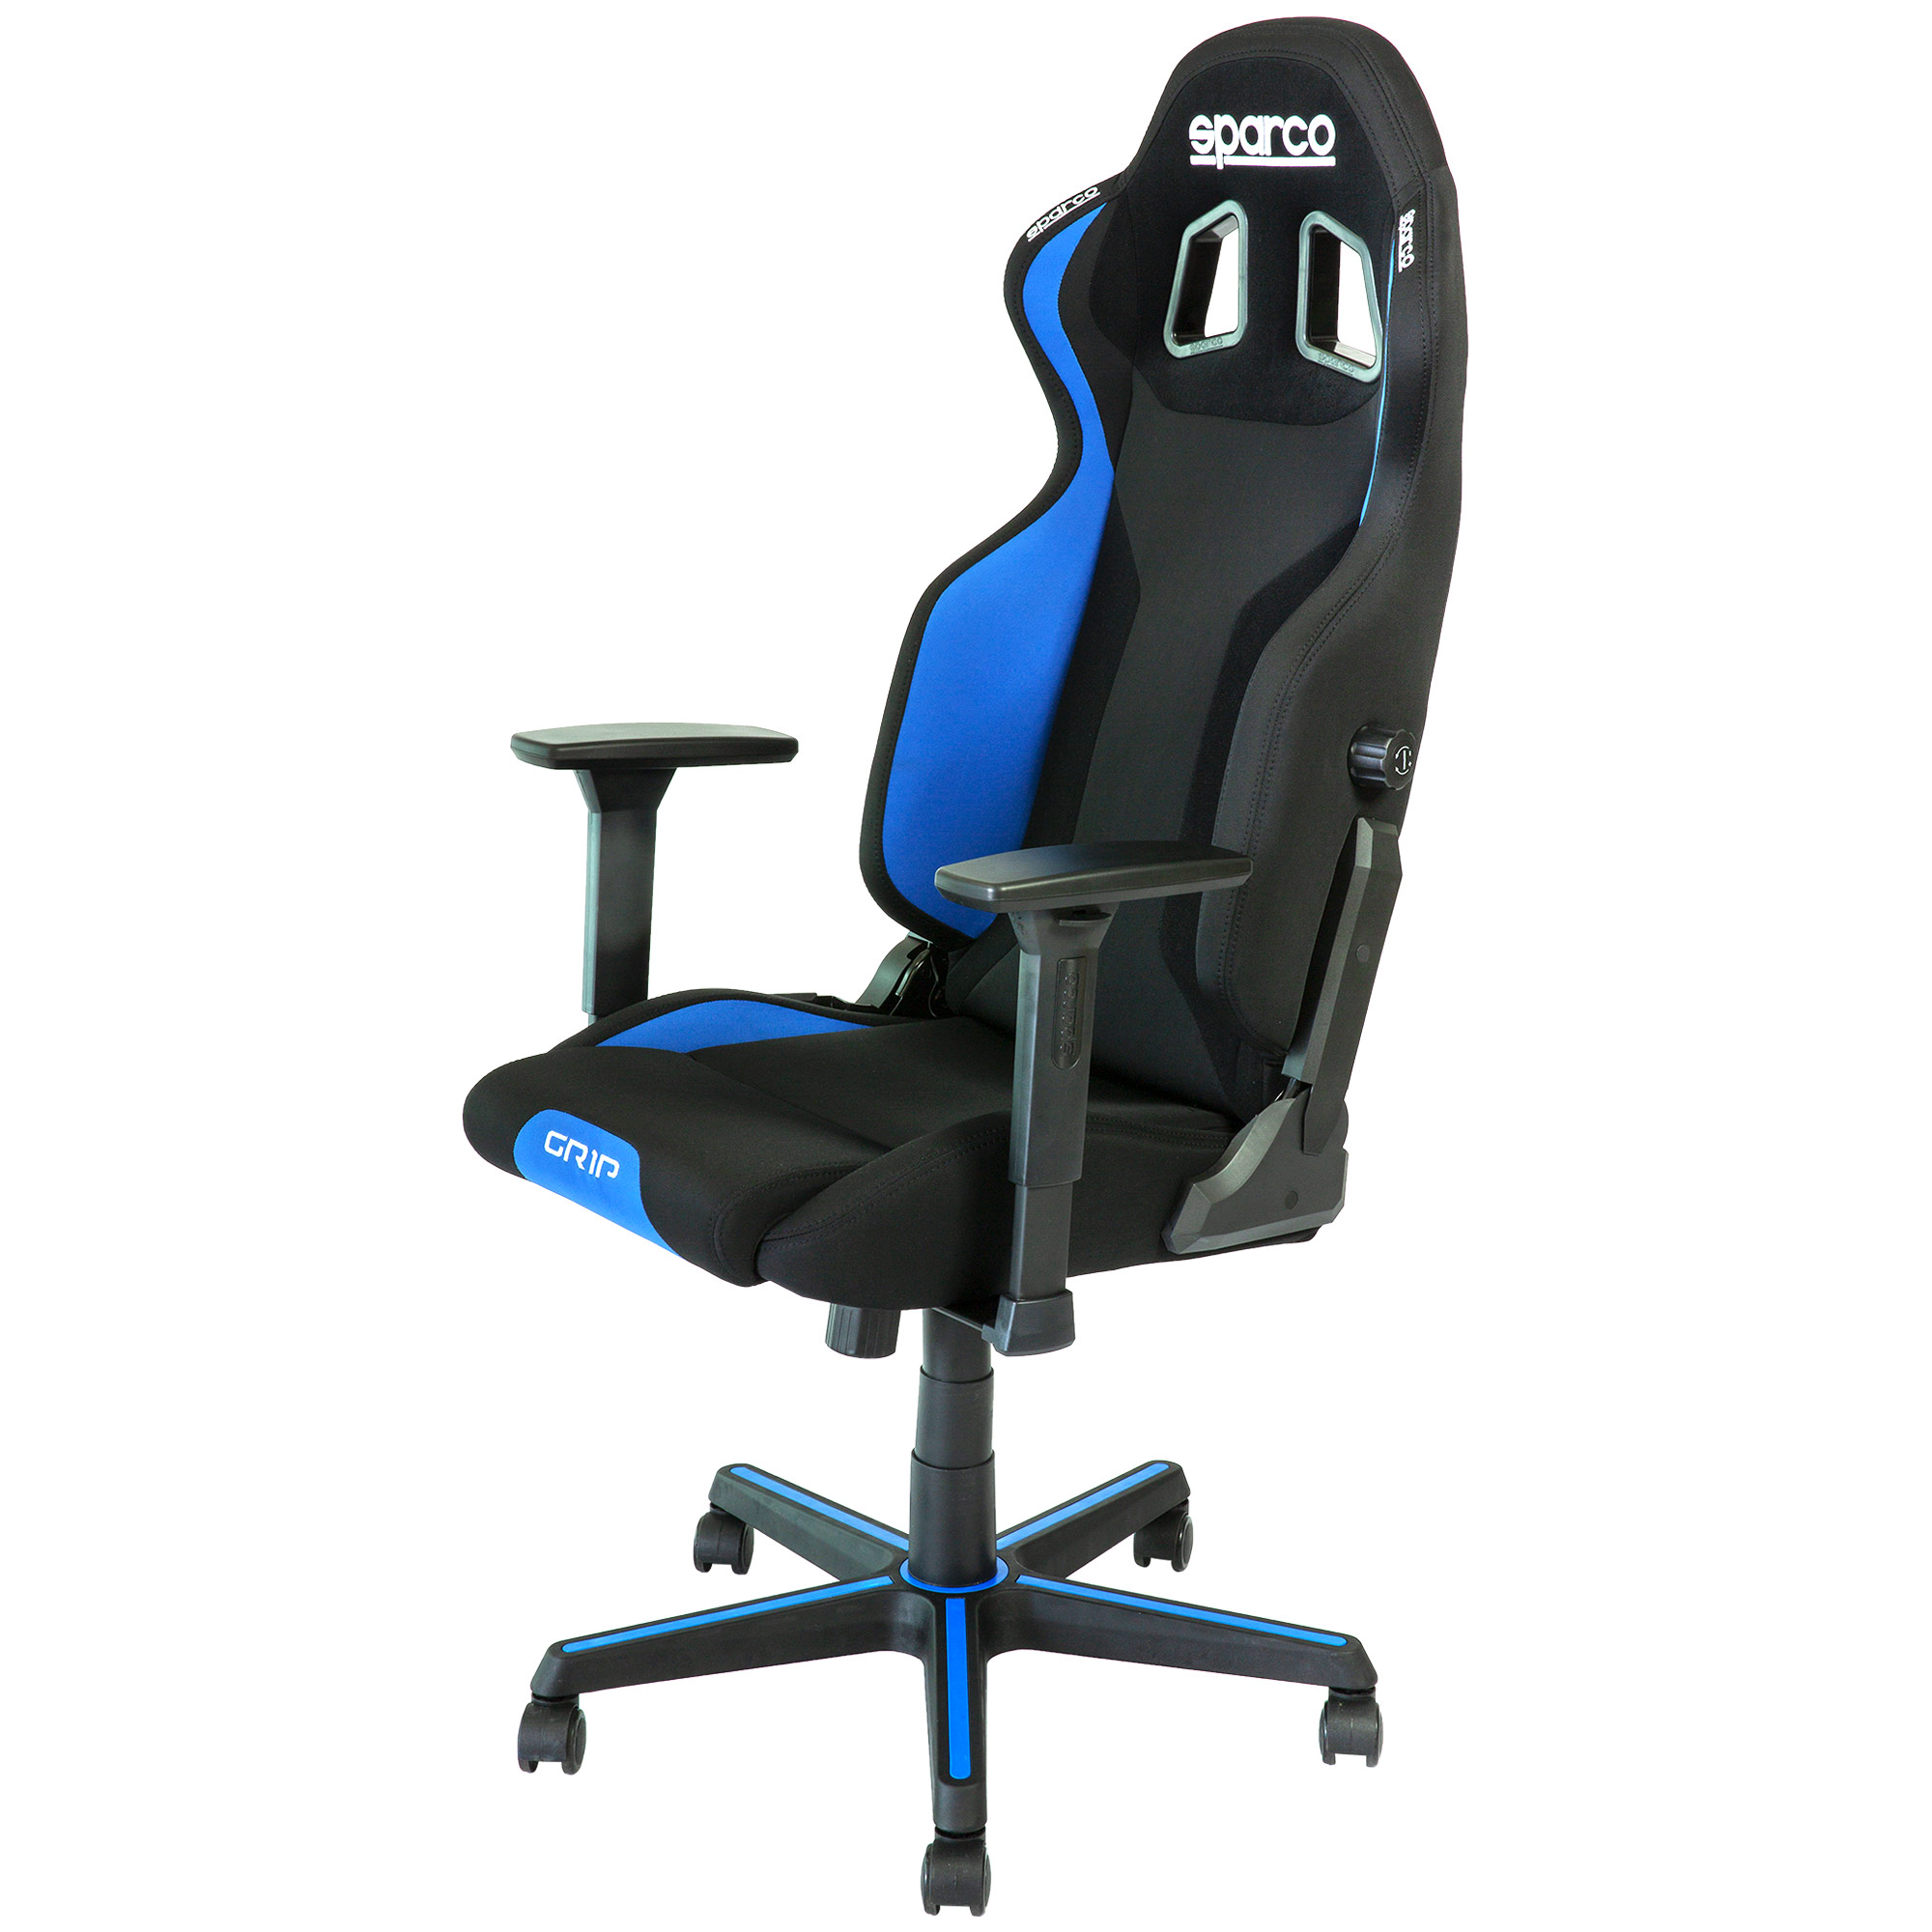 Sparco Grip Gaming / Sim Racing / Office Adjustable Chair - Black